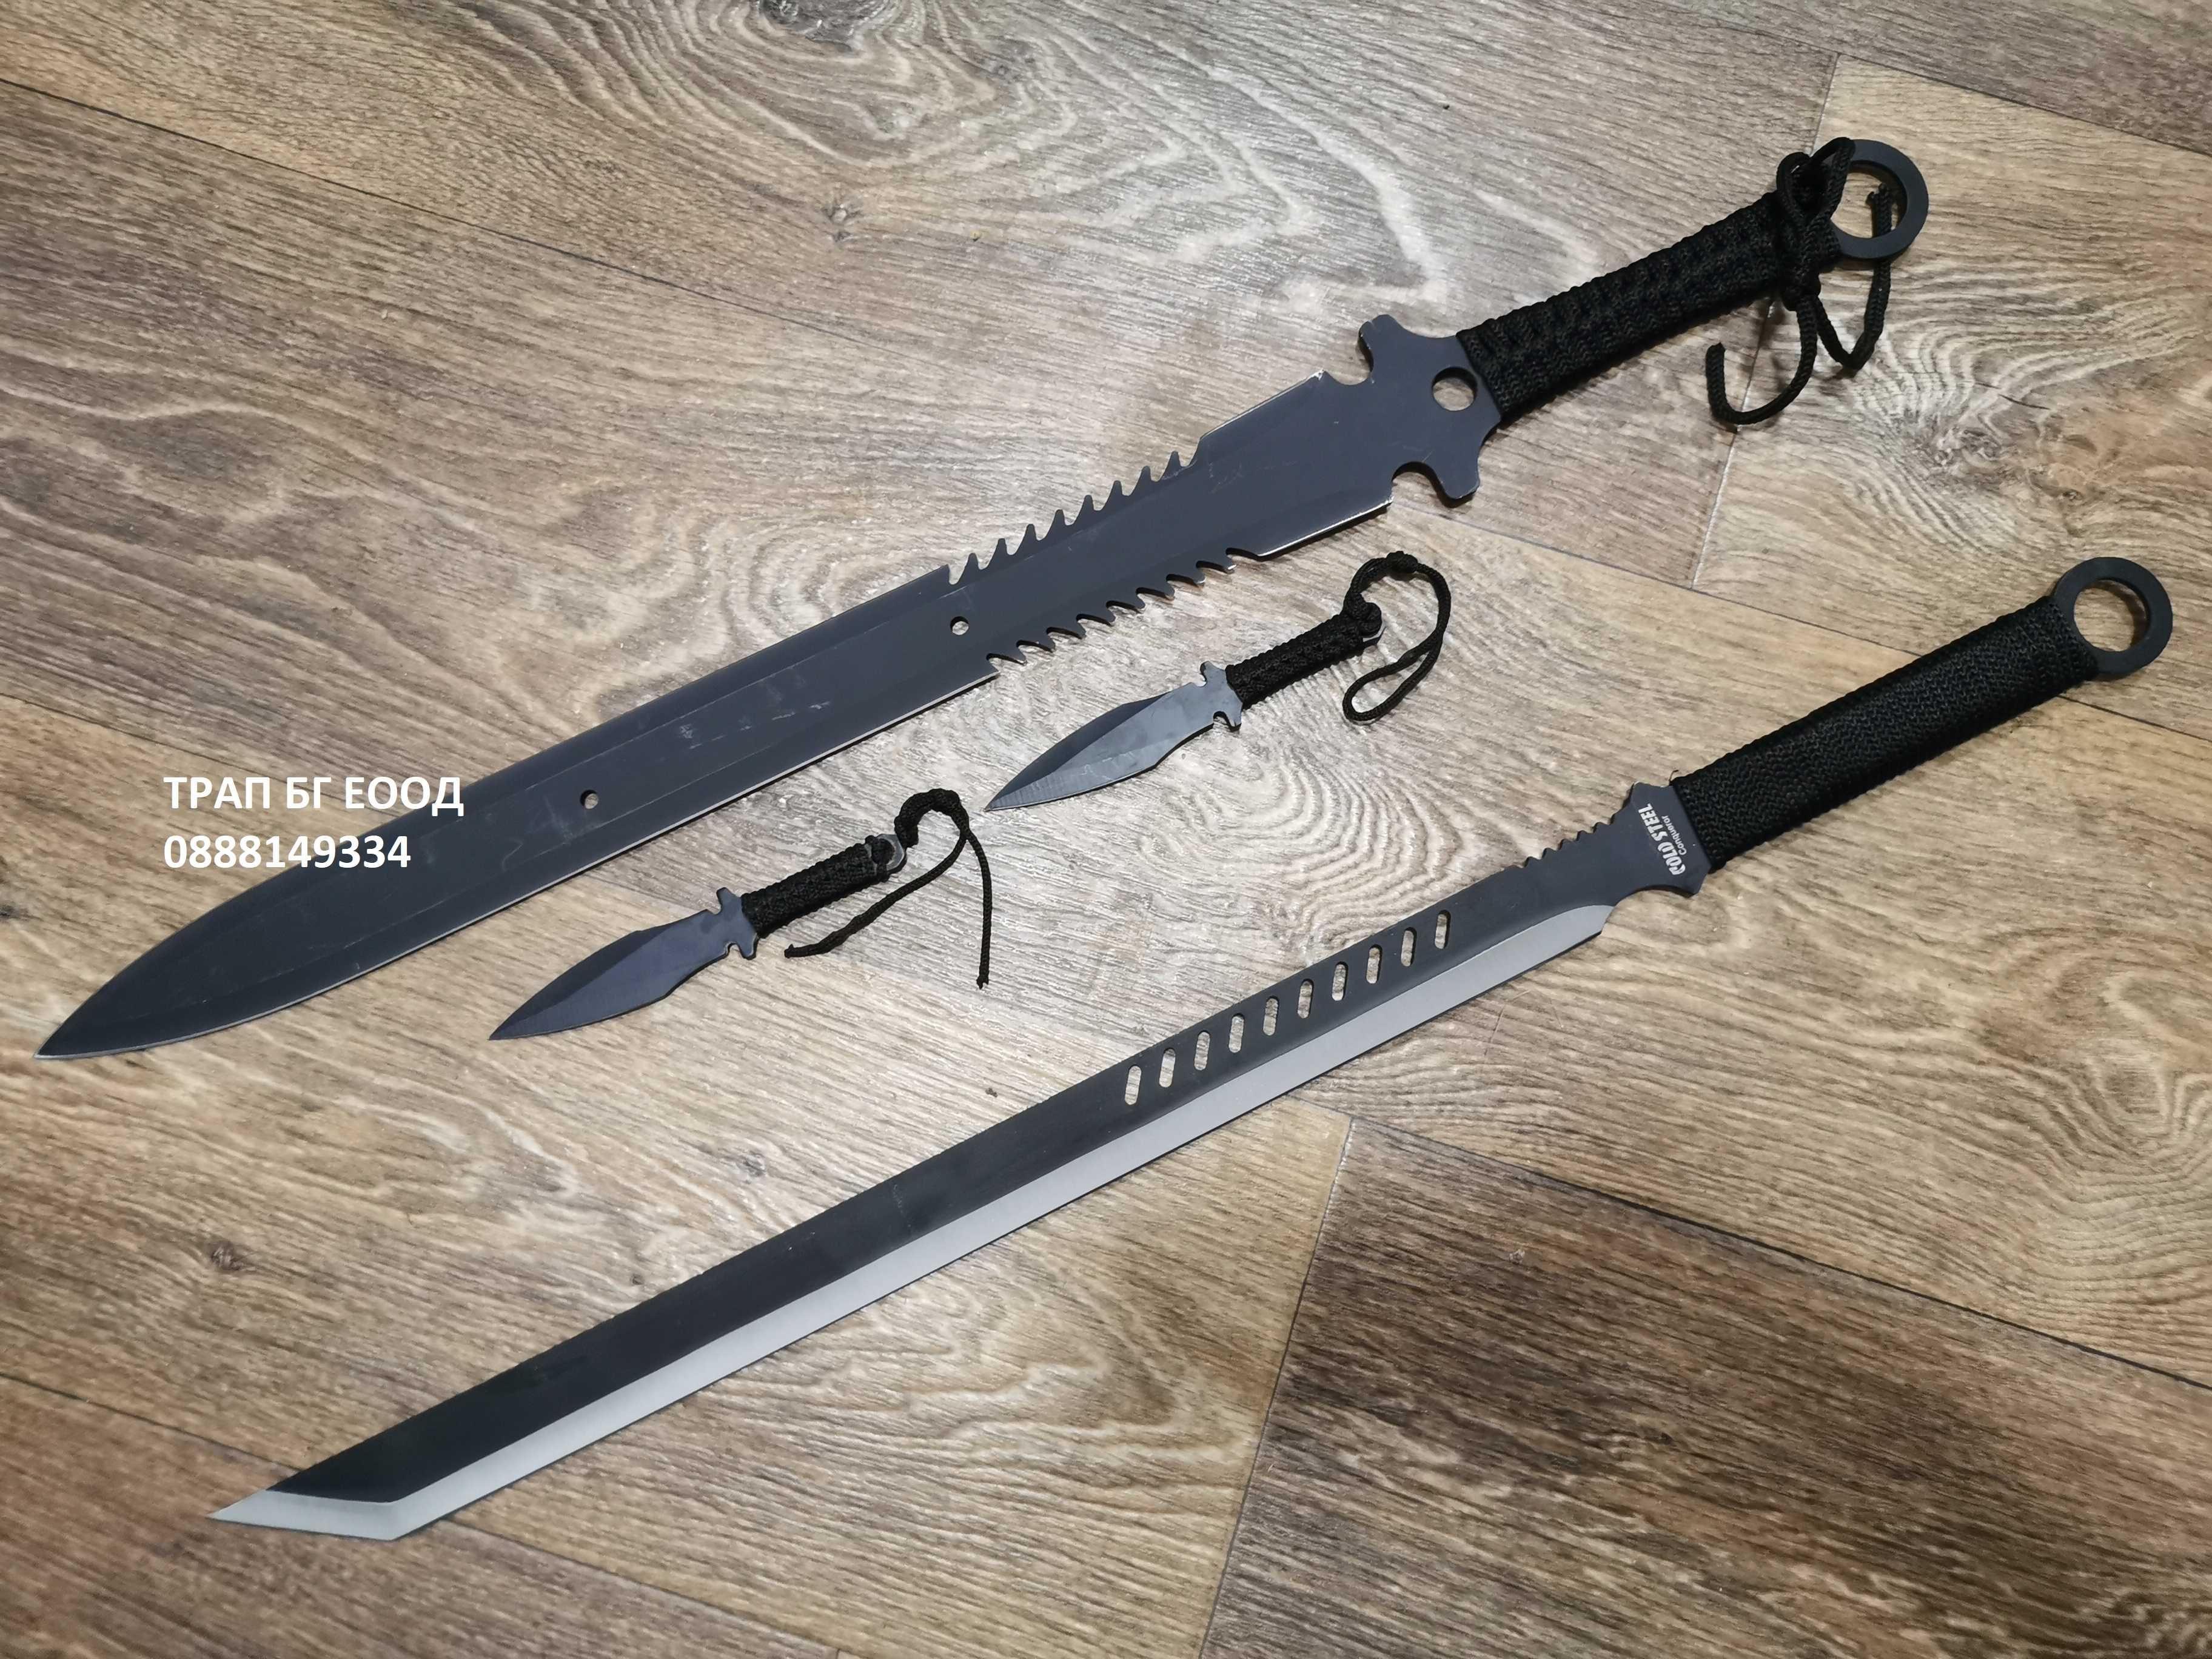 Самурайски меч Катана 2 модела нинджа, мачете, Katana Кунай Танто